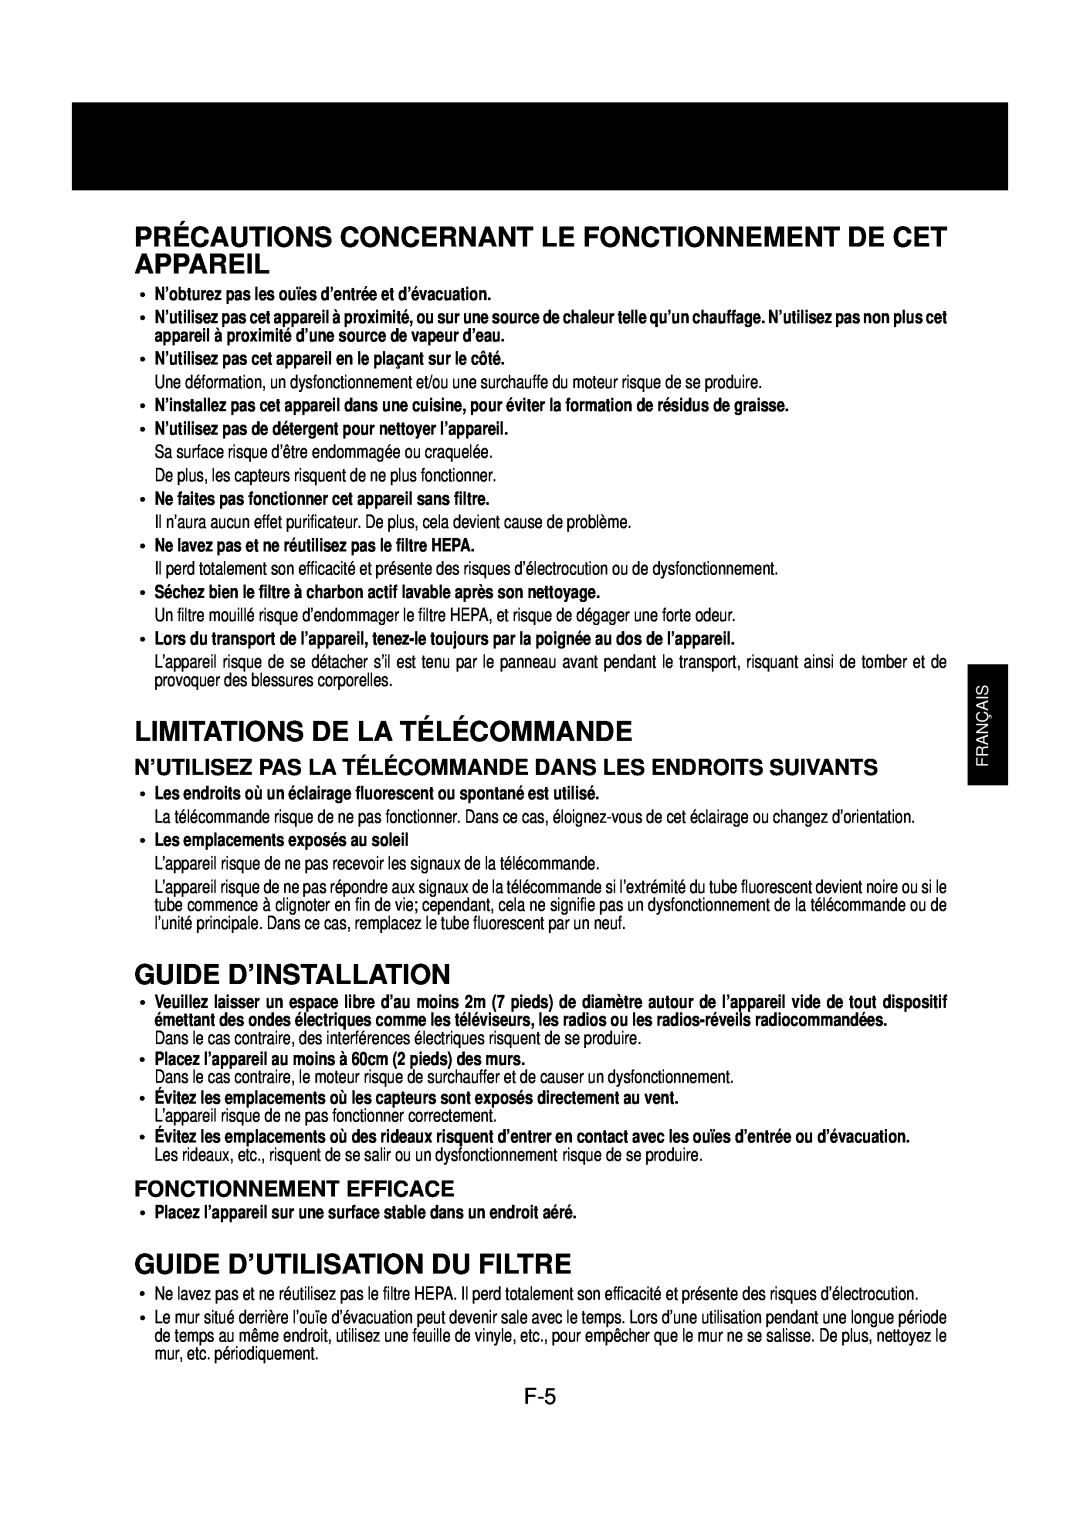 Sharp FP-N60CX operation manual Limitations De La Télécommande, Guide D’Installation, Guide D’Utilisation Du Filtre 